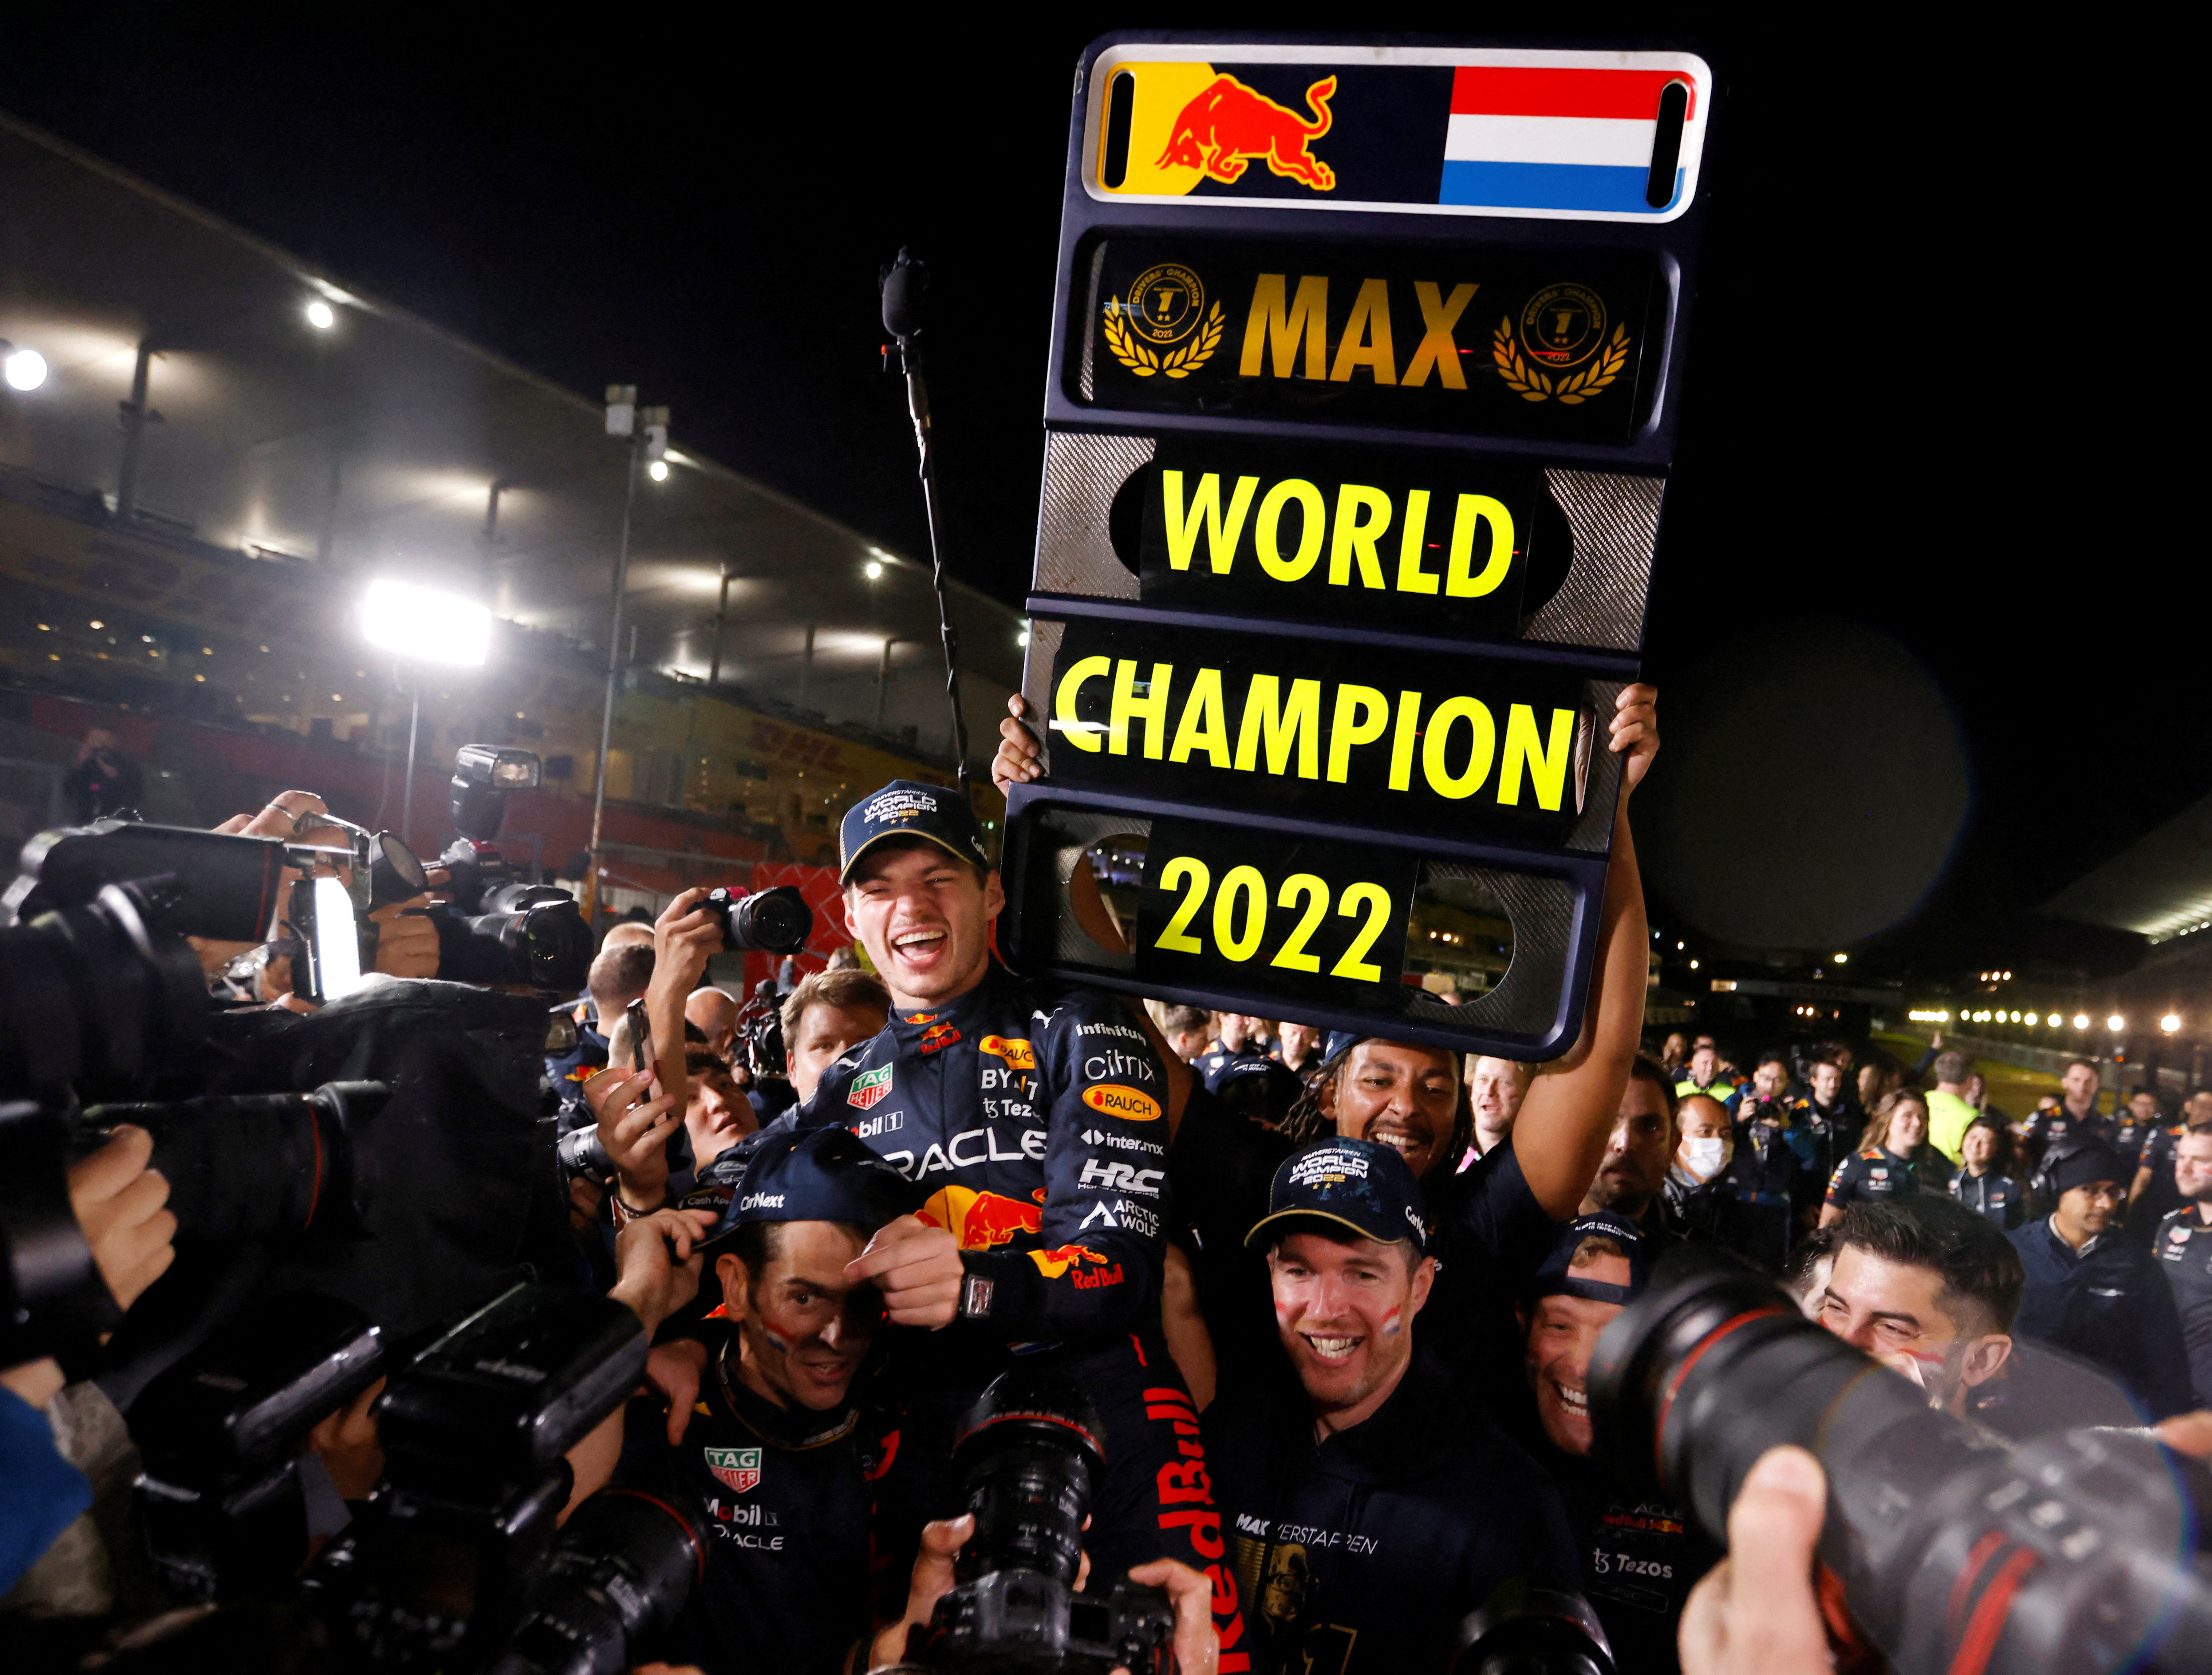 Max junto a la escudería y el cartel de "campeón 2022" de la F1 (REUTERS/Issei Kato)